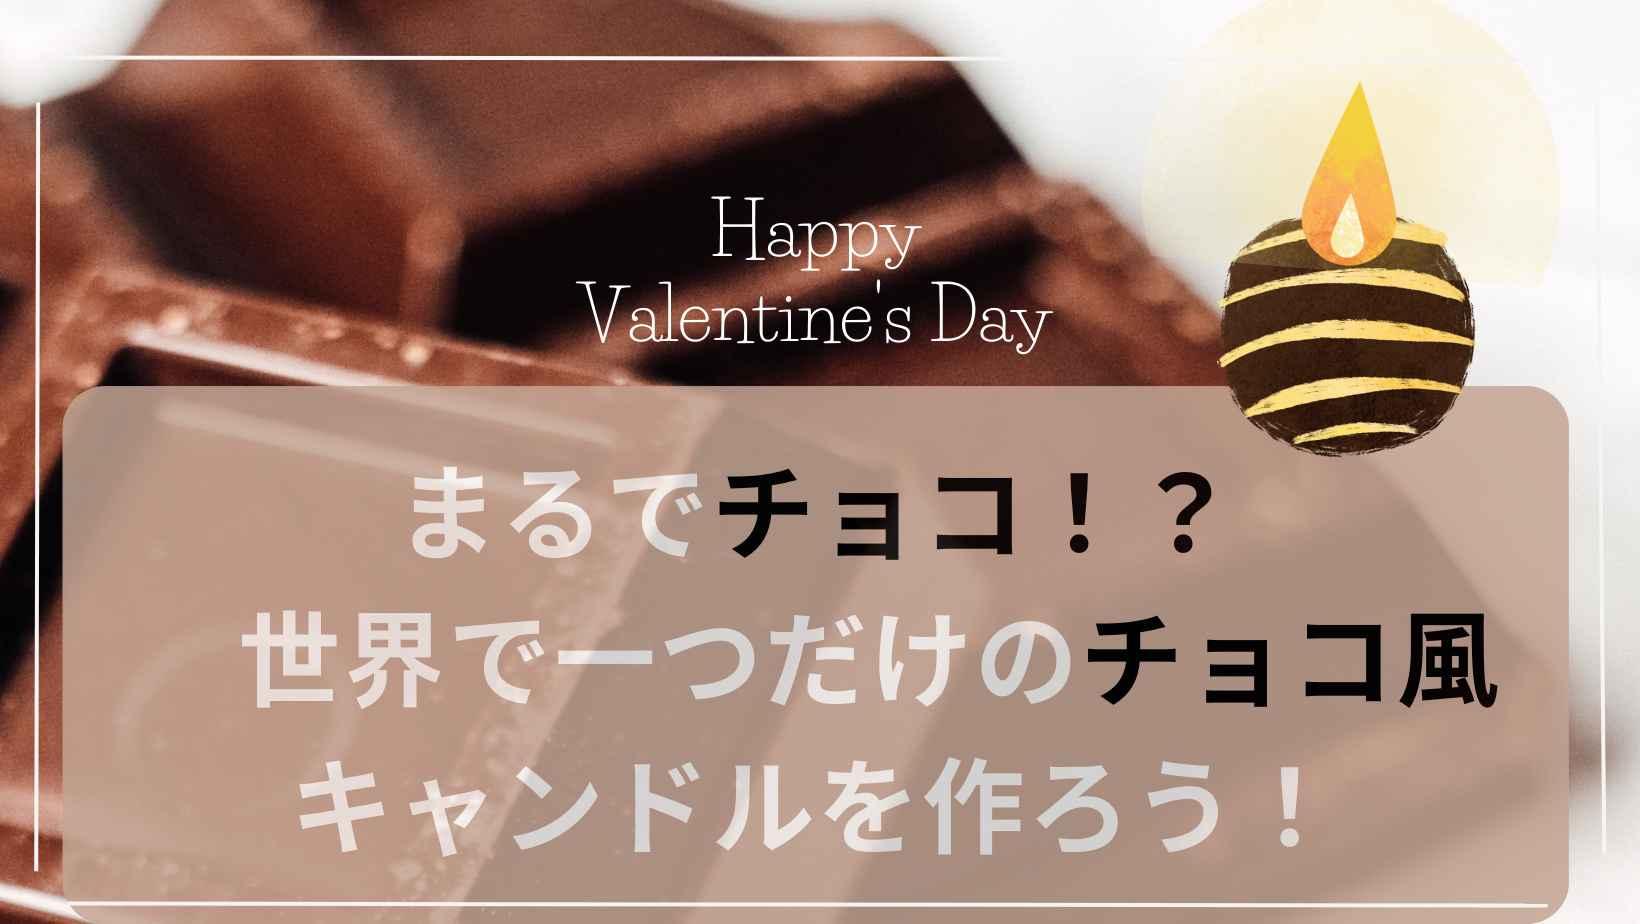 【目黒】まるでチョコ!?世界で一つだけのチョコ風キャンドルを作ろう!